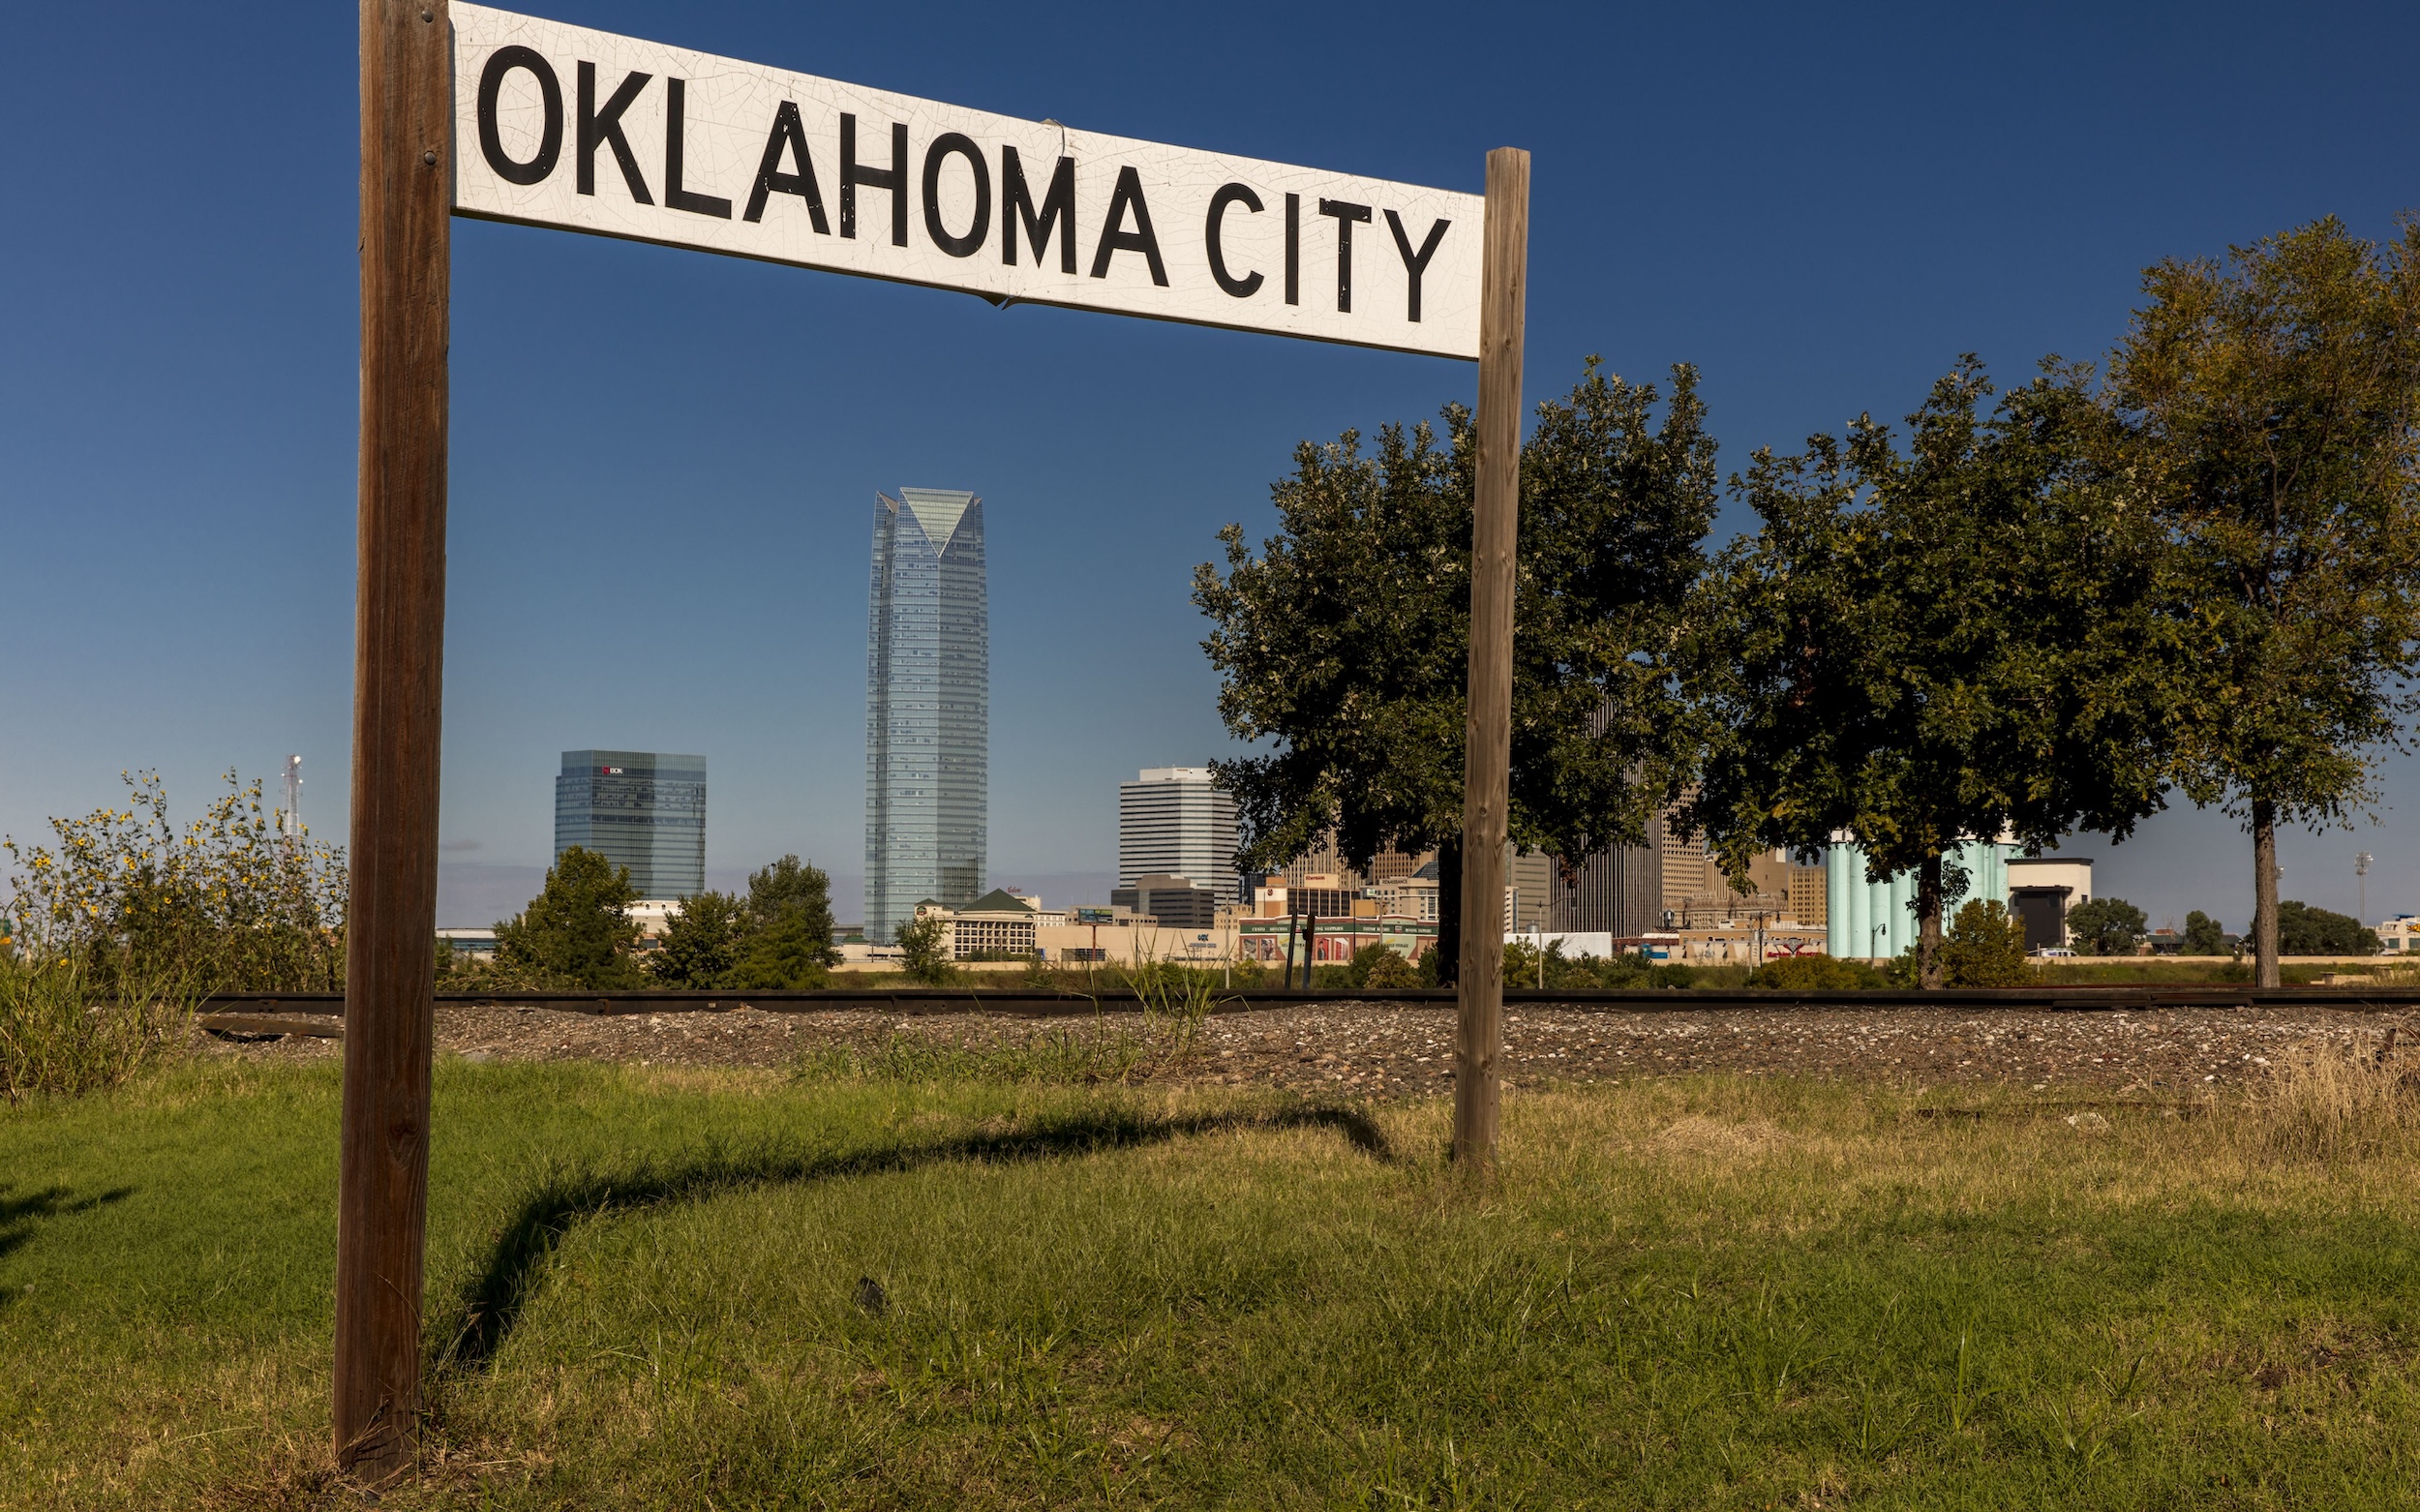 Oklahoma City skyline.